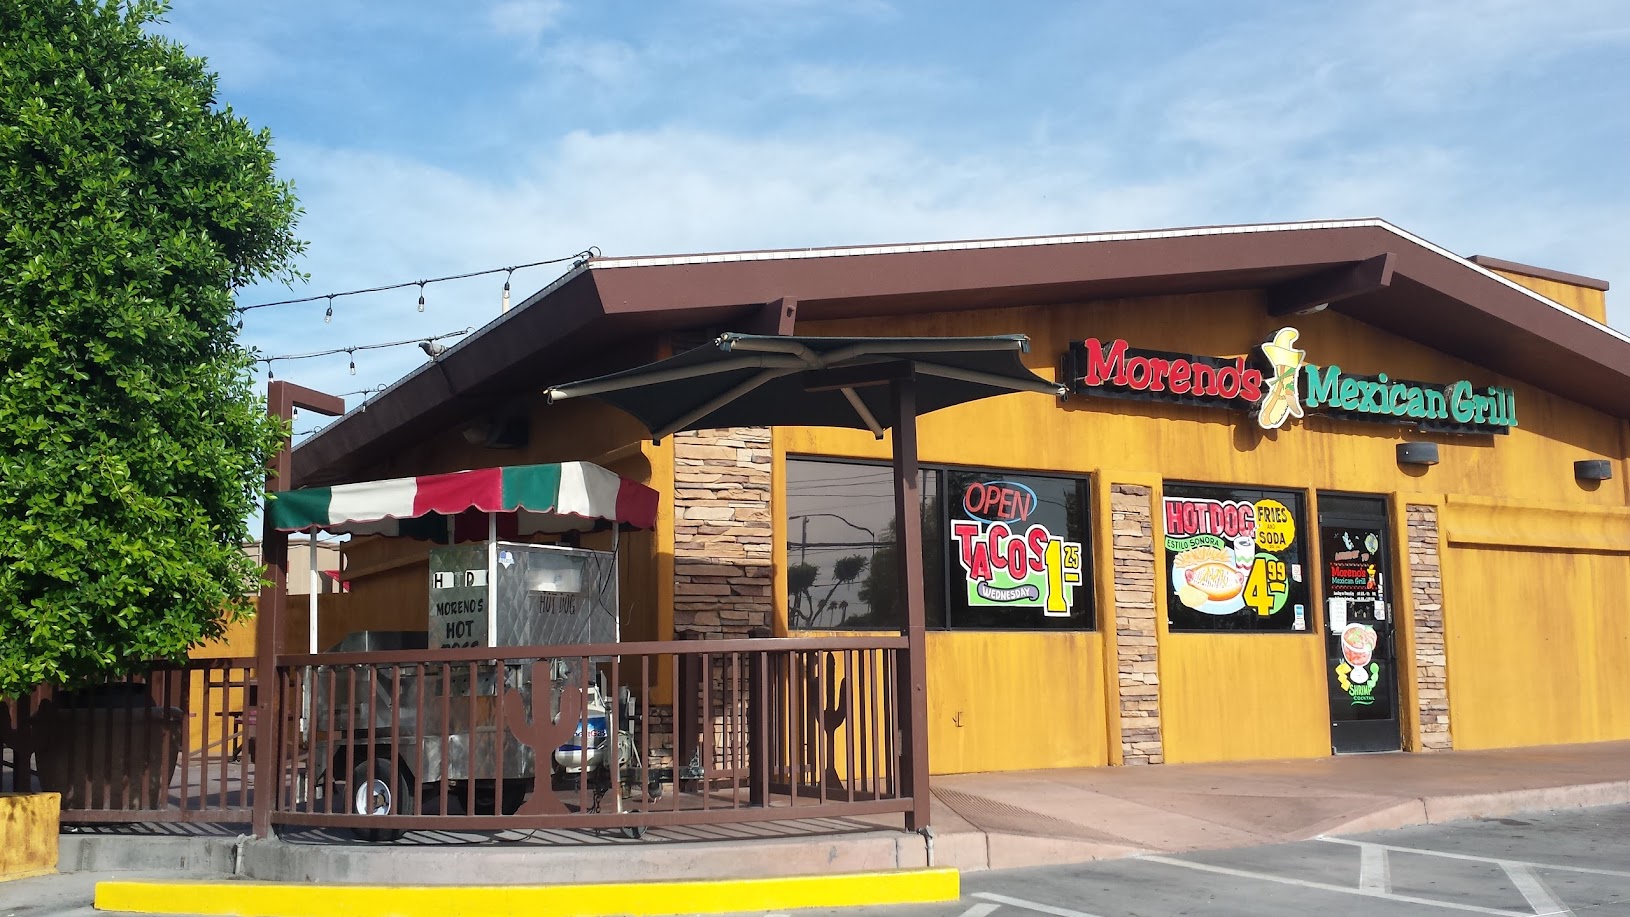 Moreno's Mexican Grill